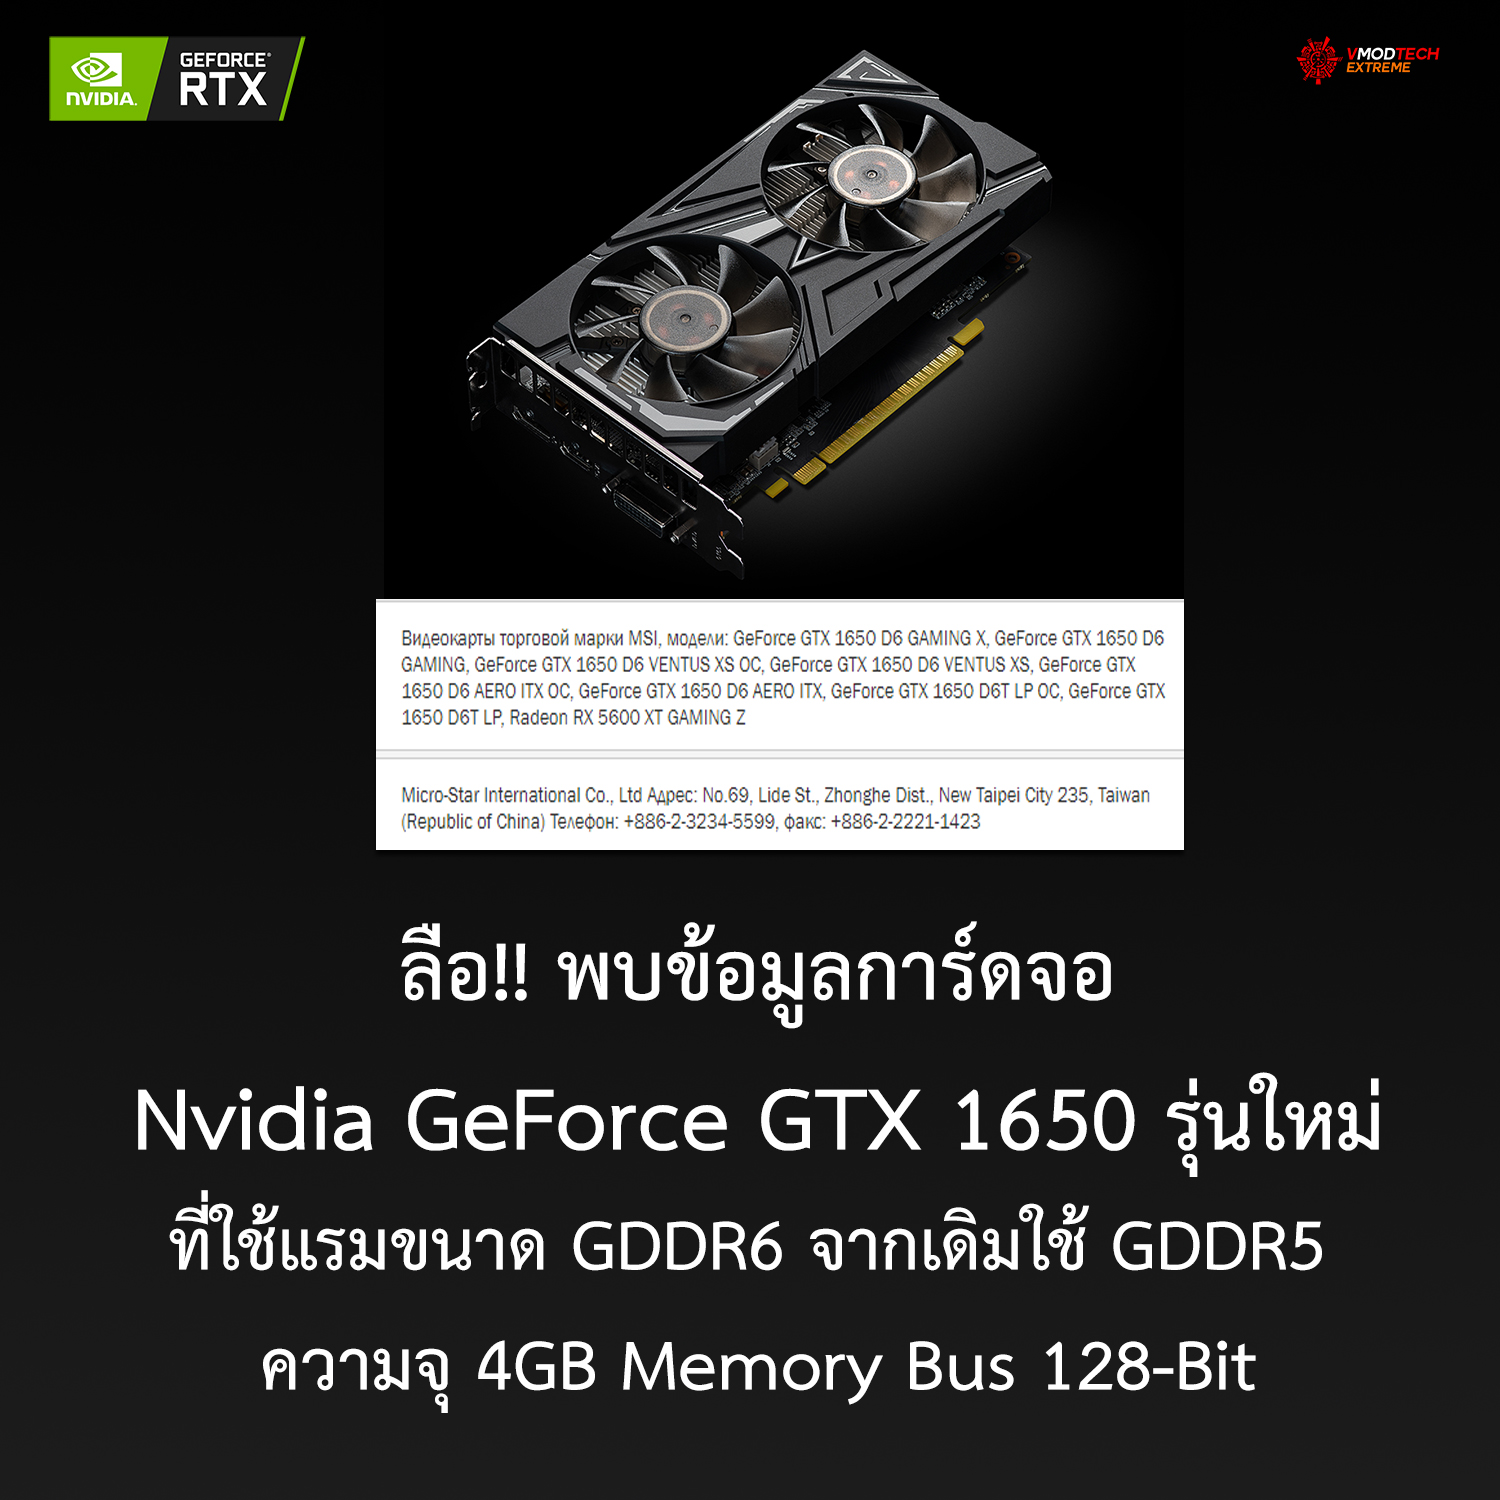 ลือ!! พบข้อมูลการ์ดจอ Nvidia GeForce GTX 1650 รุ่นใหม่ที่ใช้แรมขนาด GDDR6 